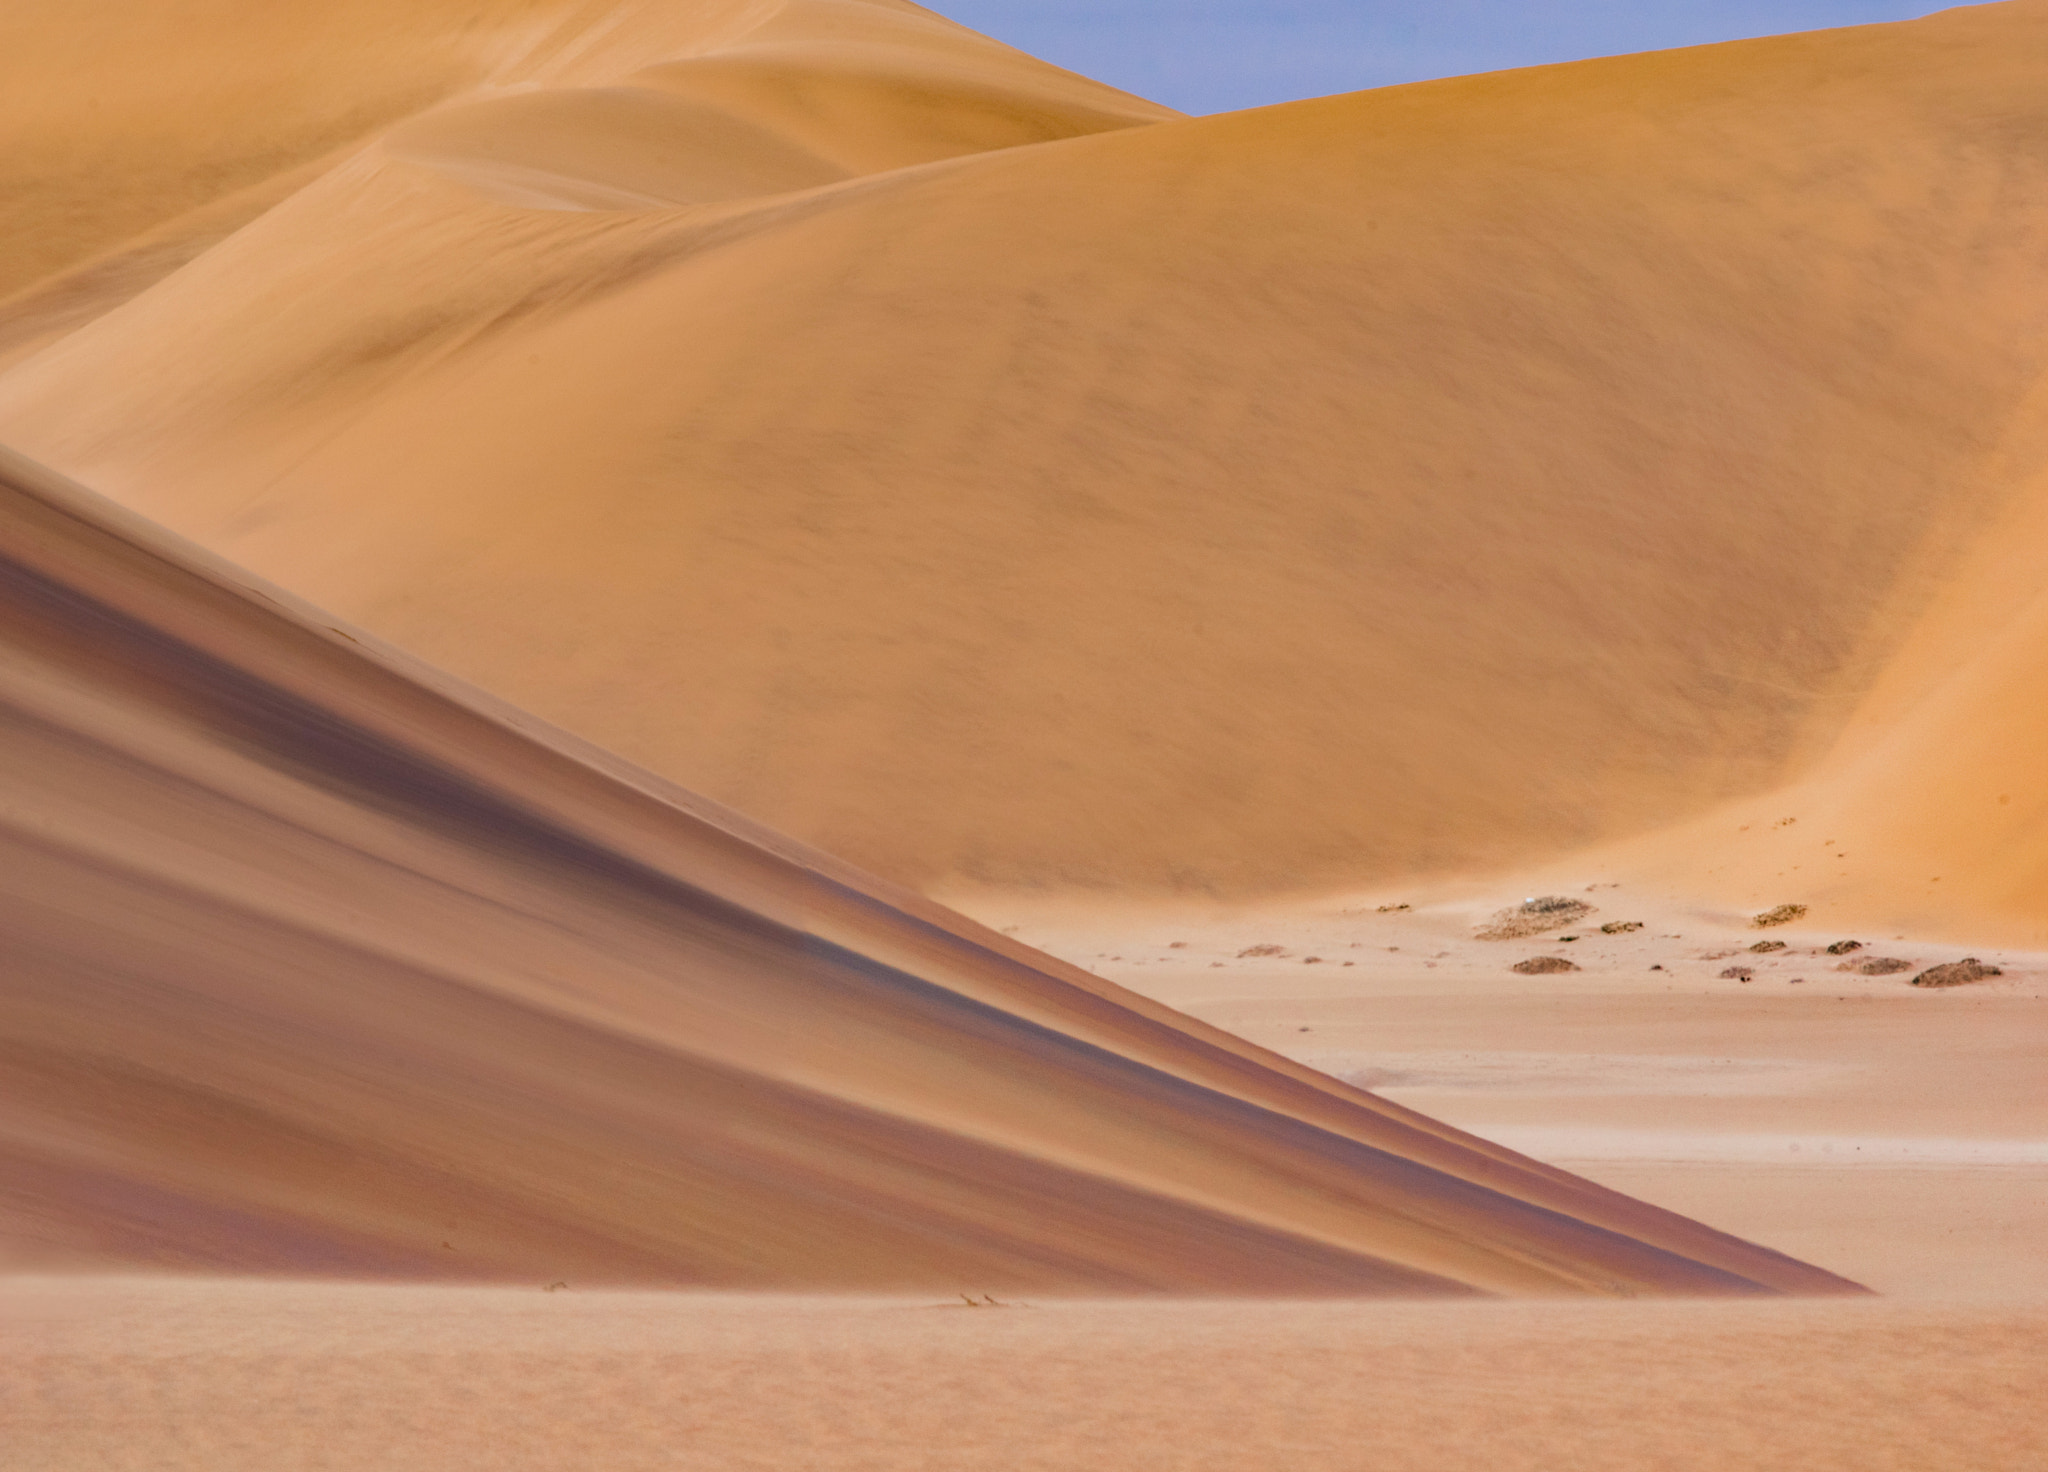 Pentax K-3 sample photo. Namib desert photography